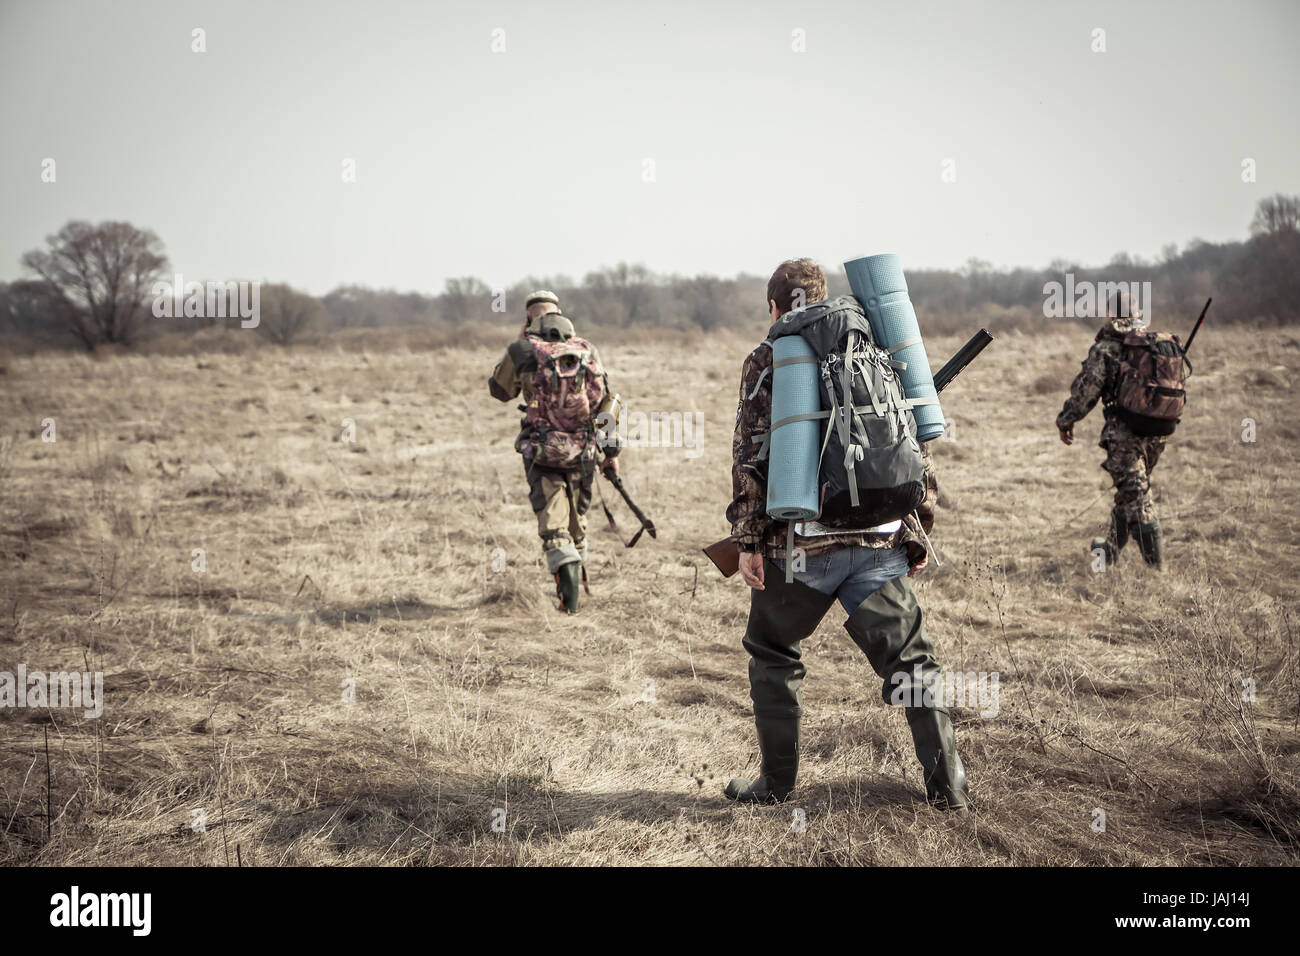 Scène de chasse avec groupe de chasseurs avec des sacs et des munitions de chasse en terrain rural pendant la saison de la chasse à l'image Banque D'Images